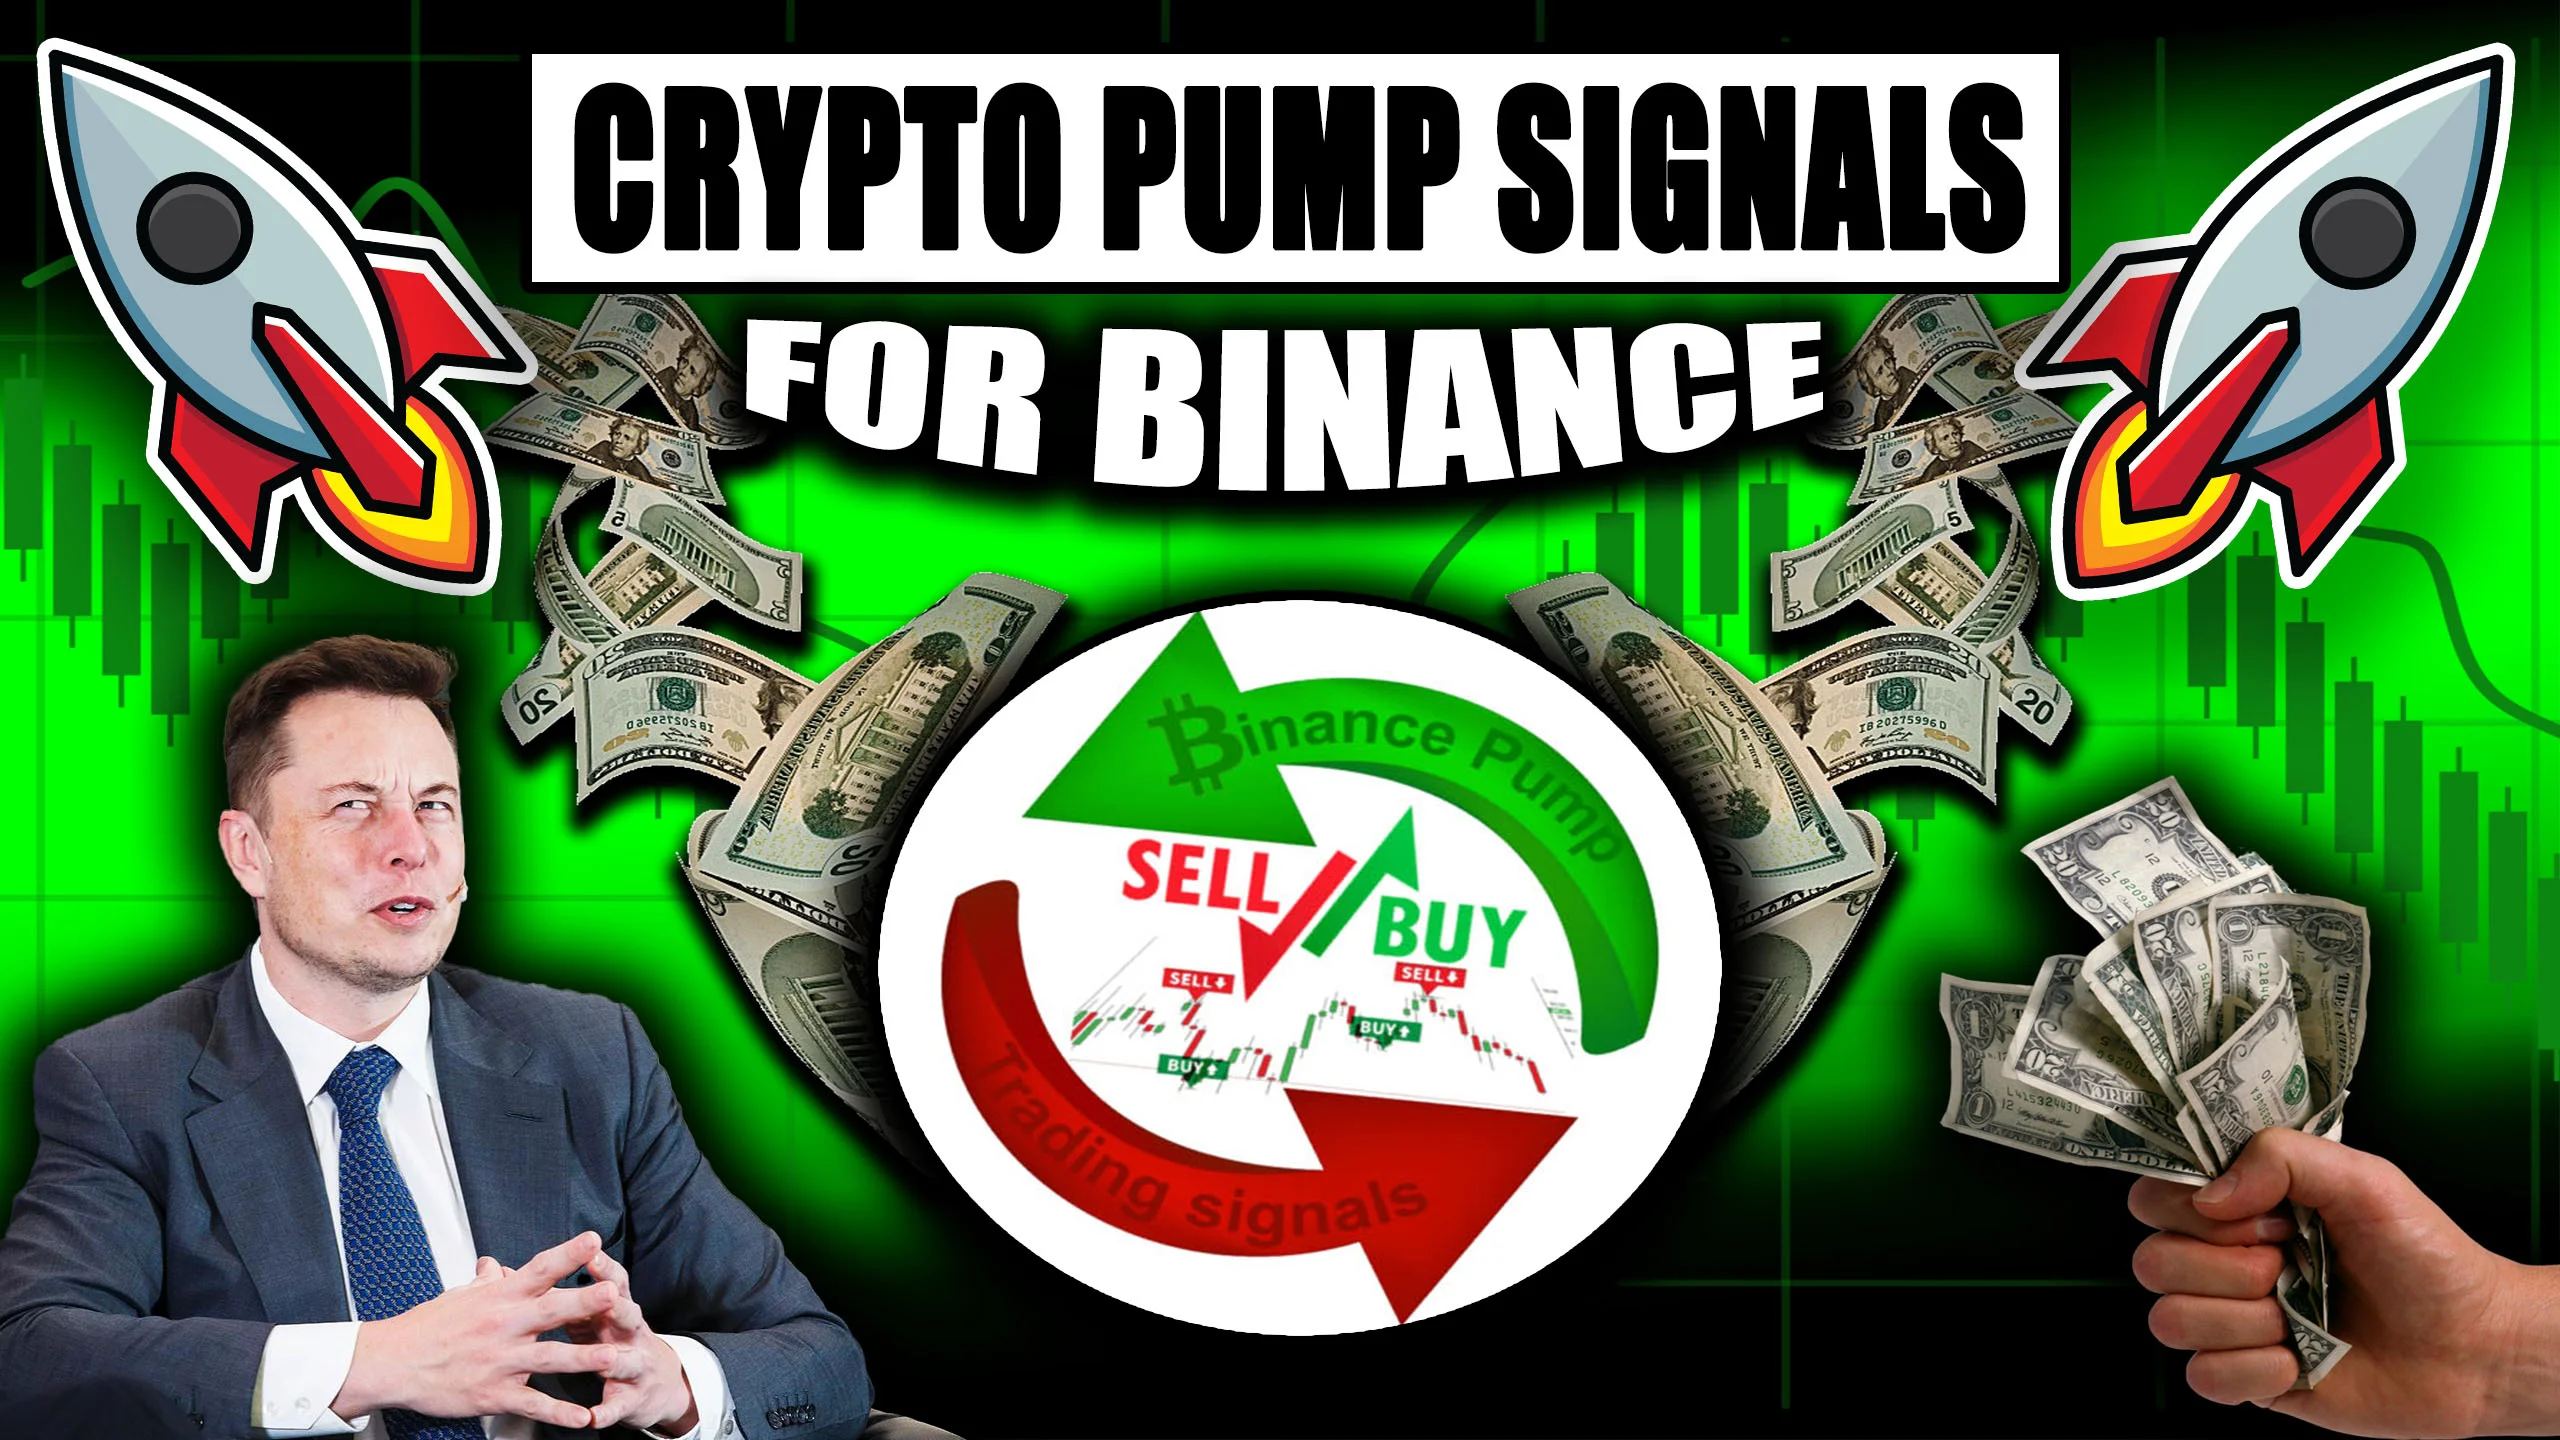 Bannière de signaux de pompe cryptographique - Maximisez vos profits avec l'IA Crypto Pump Signals for Binance 4